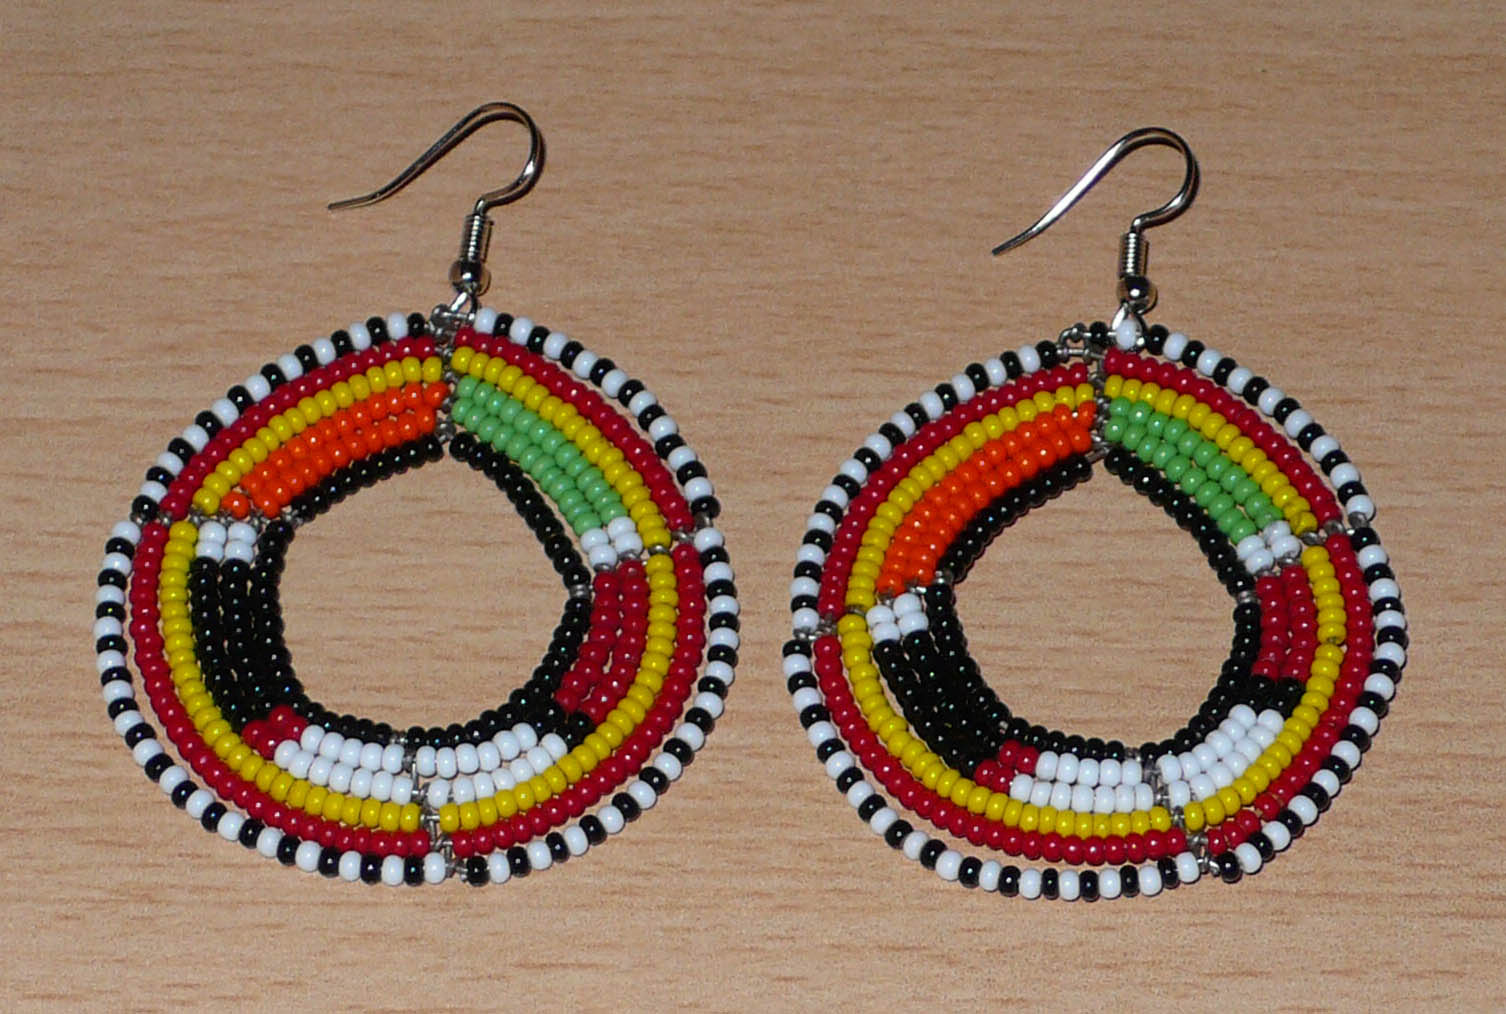 Boucles d'oreilles africaines à motifs ethniques de tradition Massai composées de perles de verre noires et multicolores fixées sur six rangées de fils de fer montés en cercles. De taille moyenne, ces boucles d'oreilles mesurent 7 cm de long et 5 cm de large. Timeless Fineries